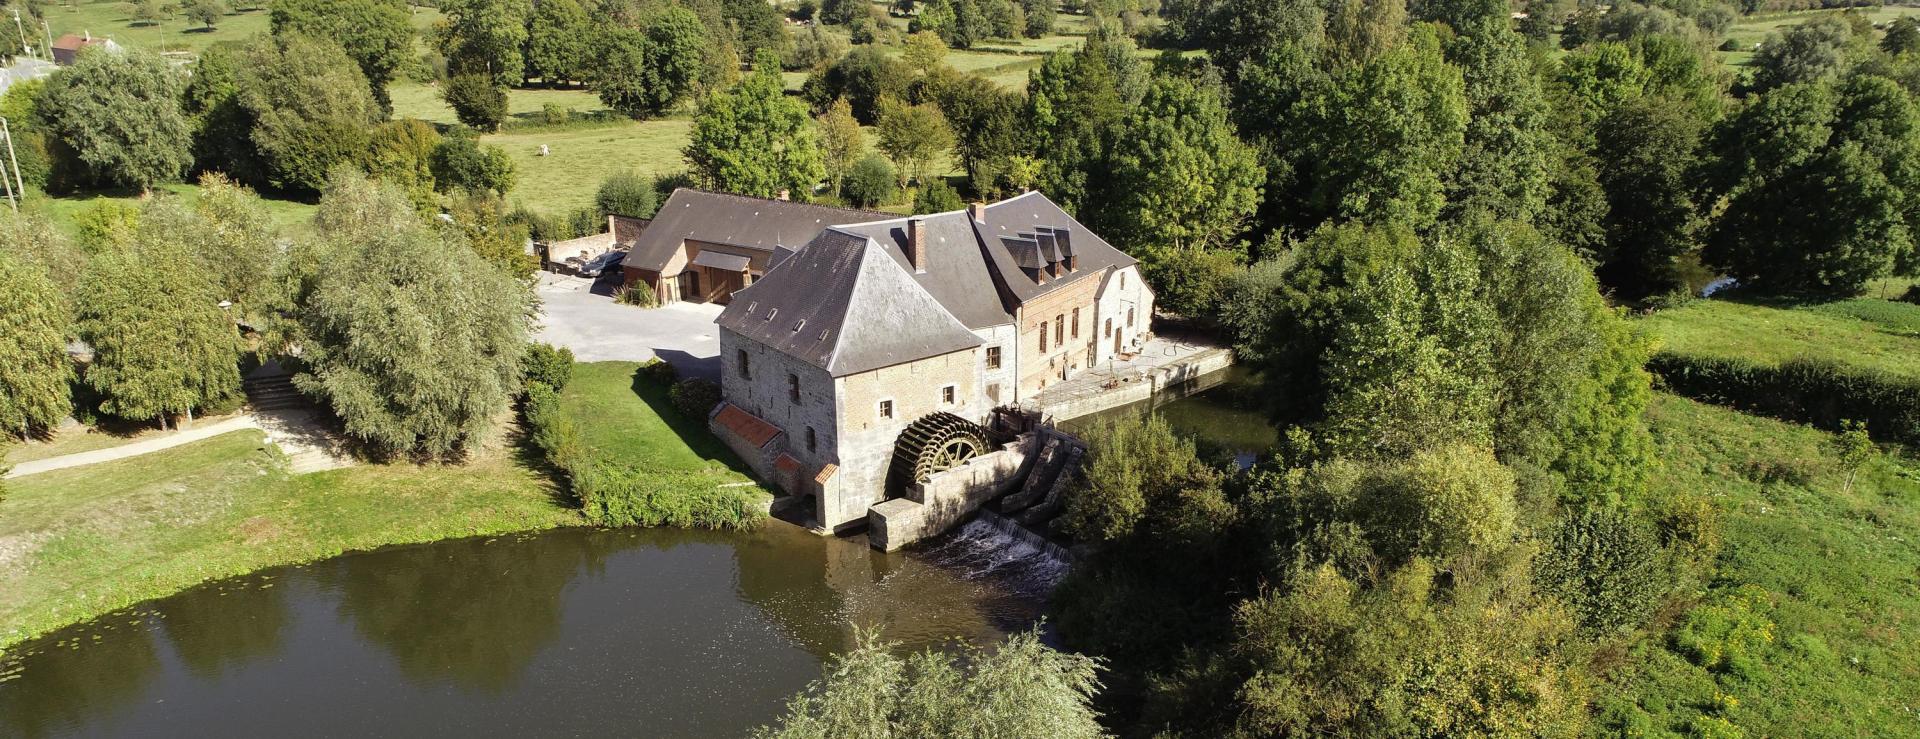 Le Moulin de Grand-Fayt dans l'Avesnois